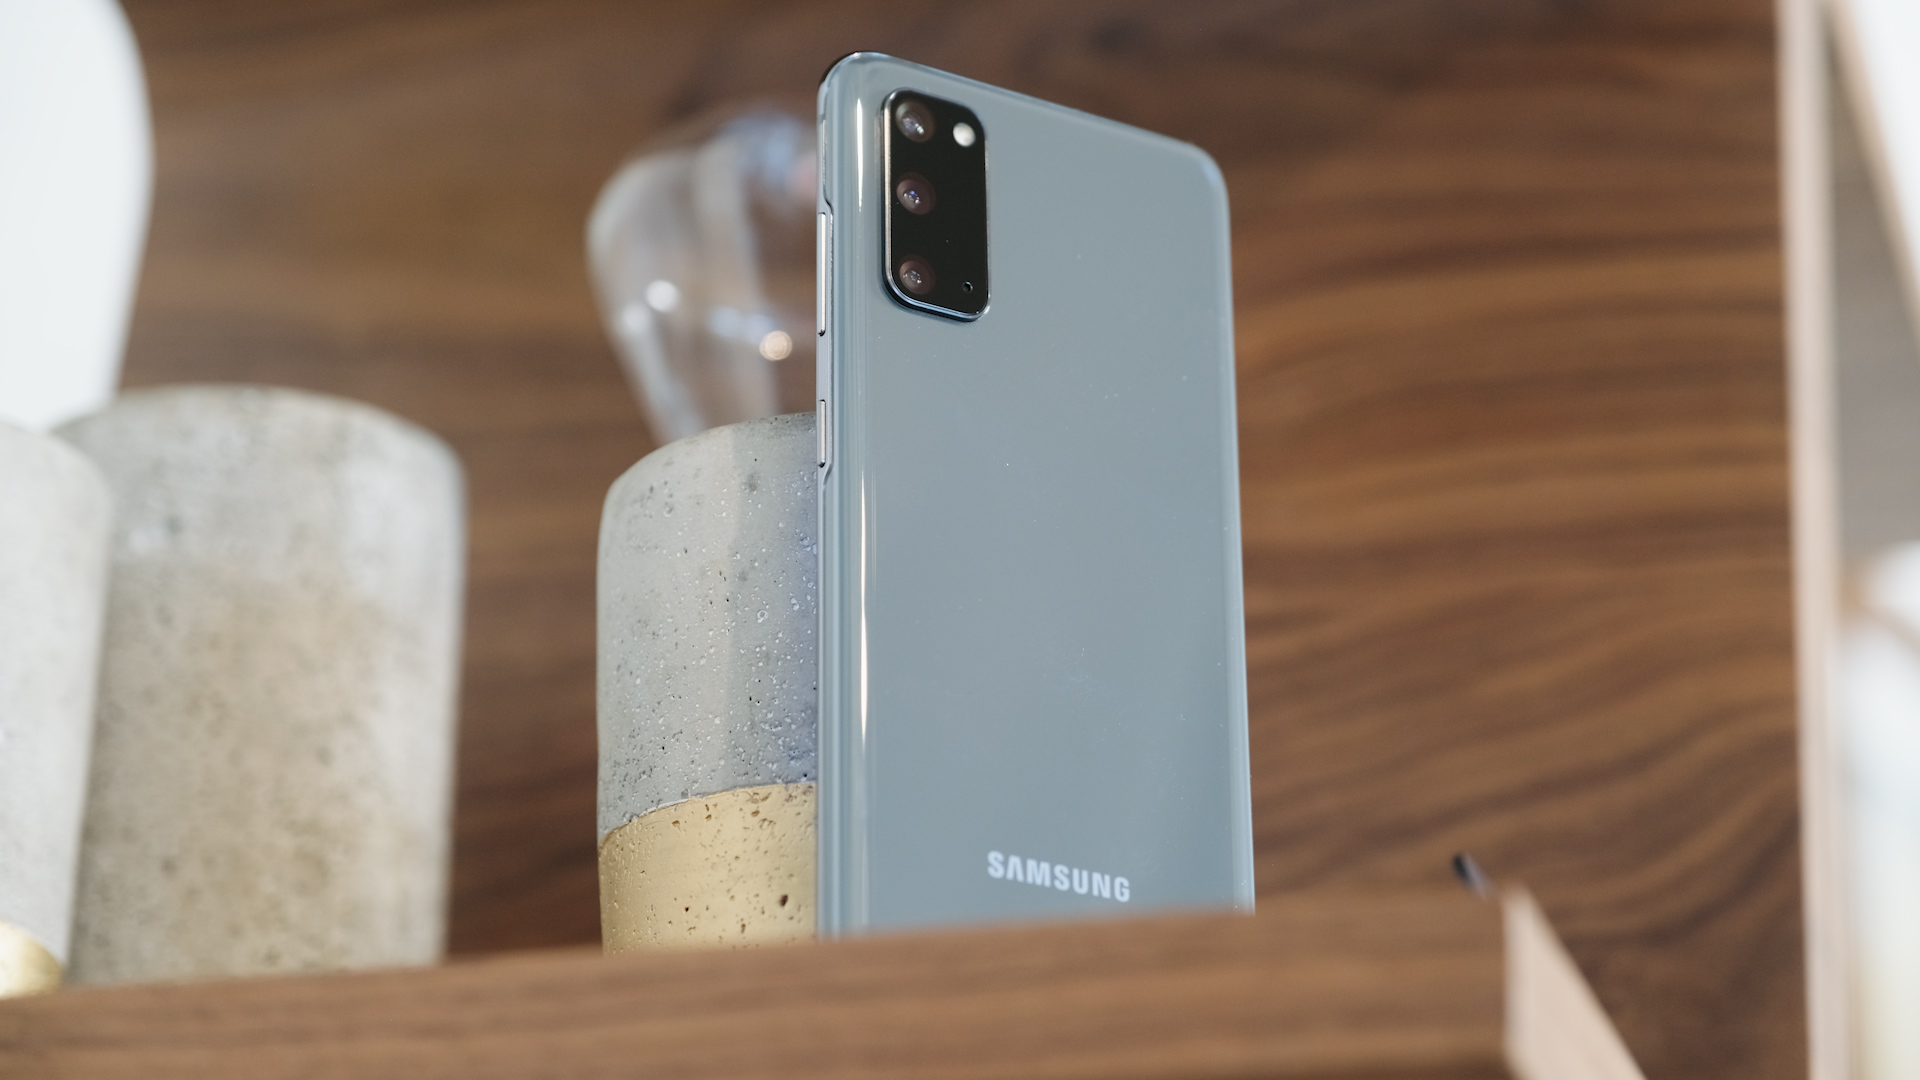 Samsung Galaxy S20 Blue back